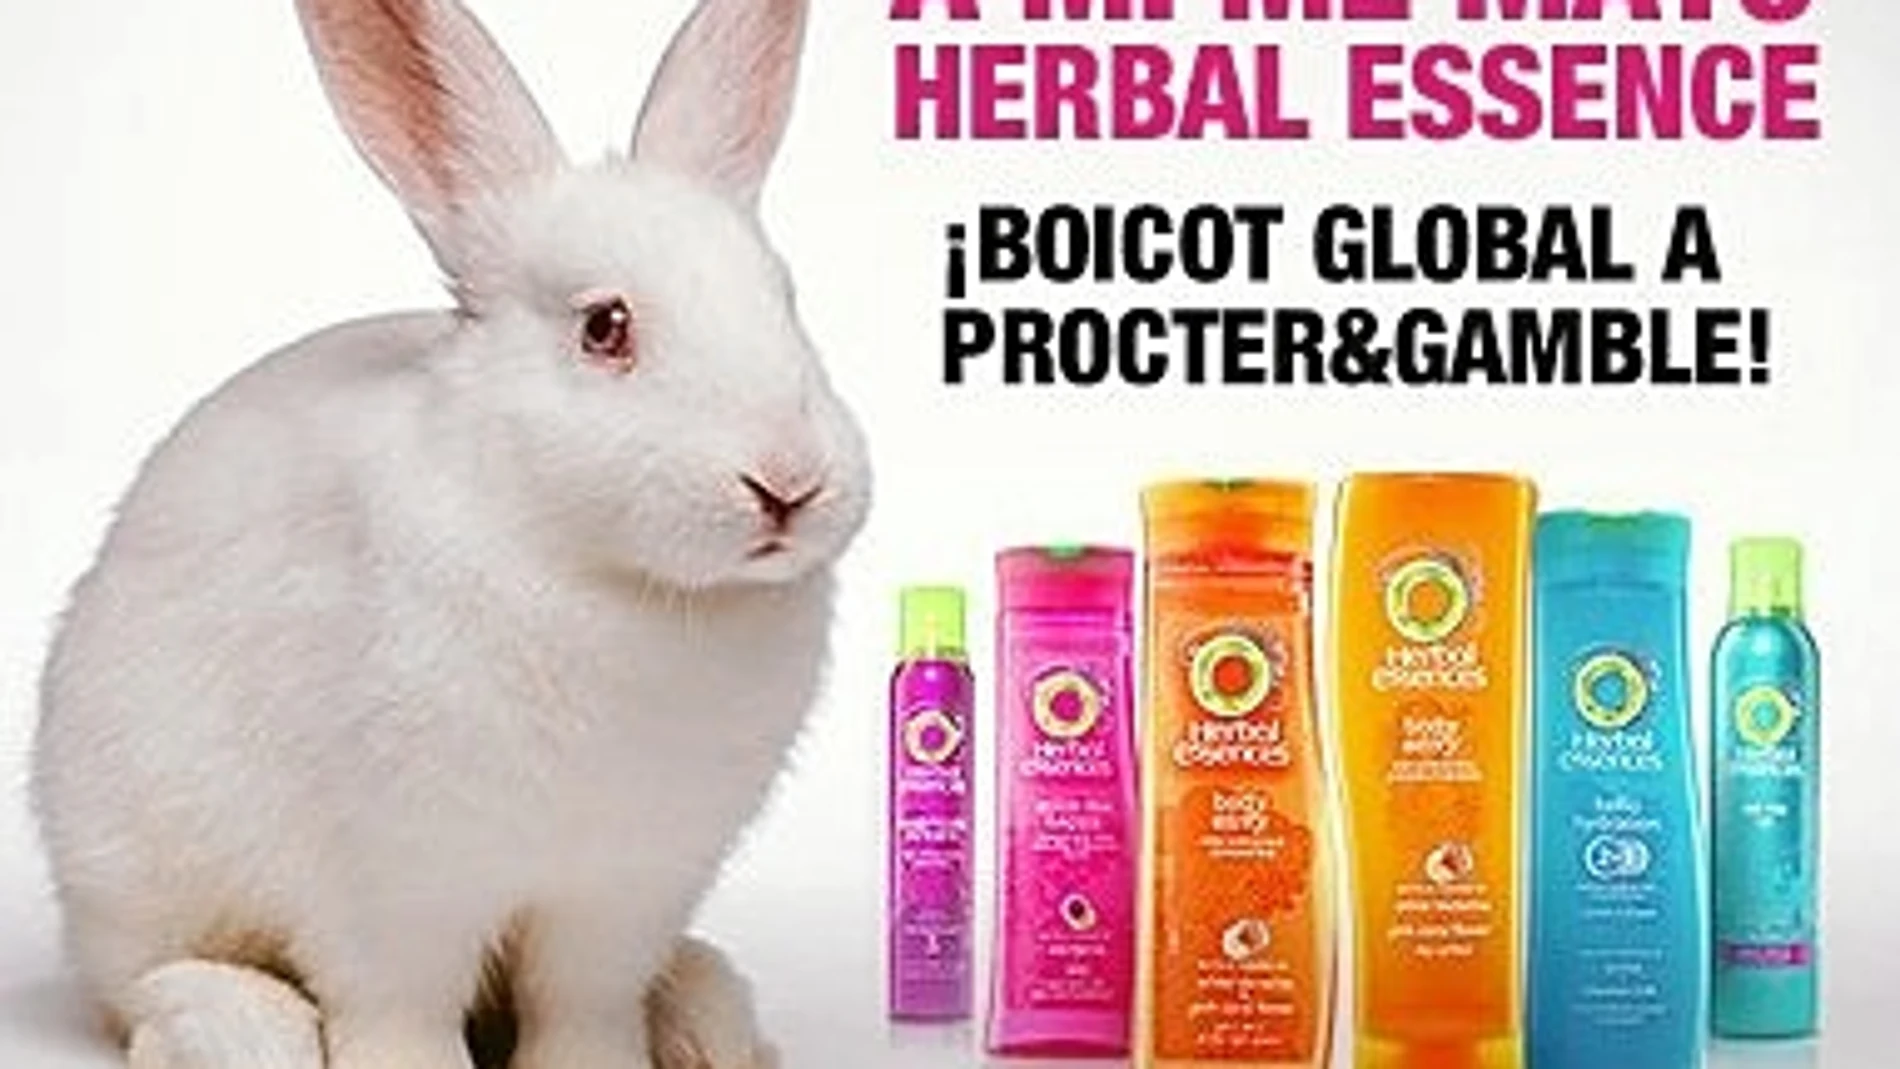 Procter & Gamble es una de las compañías multinacionales que hasta la fecha continúa realizando ensayos cosméticos con animales